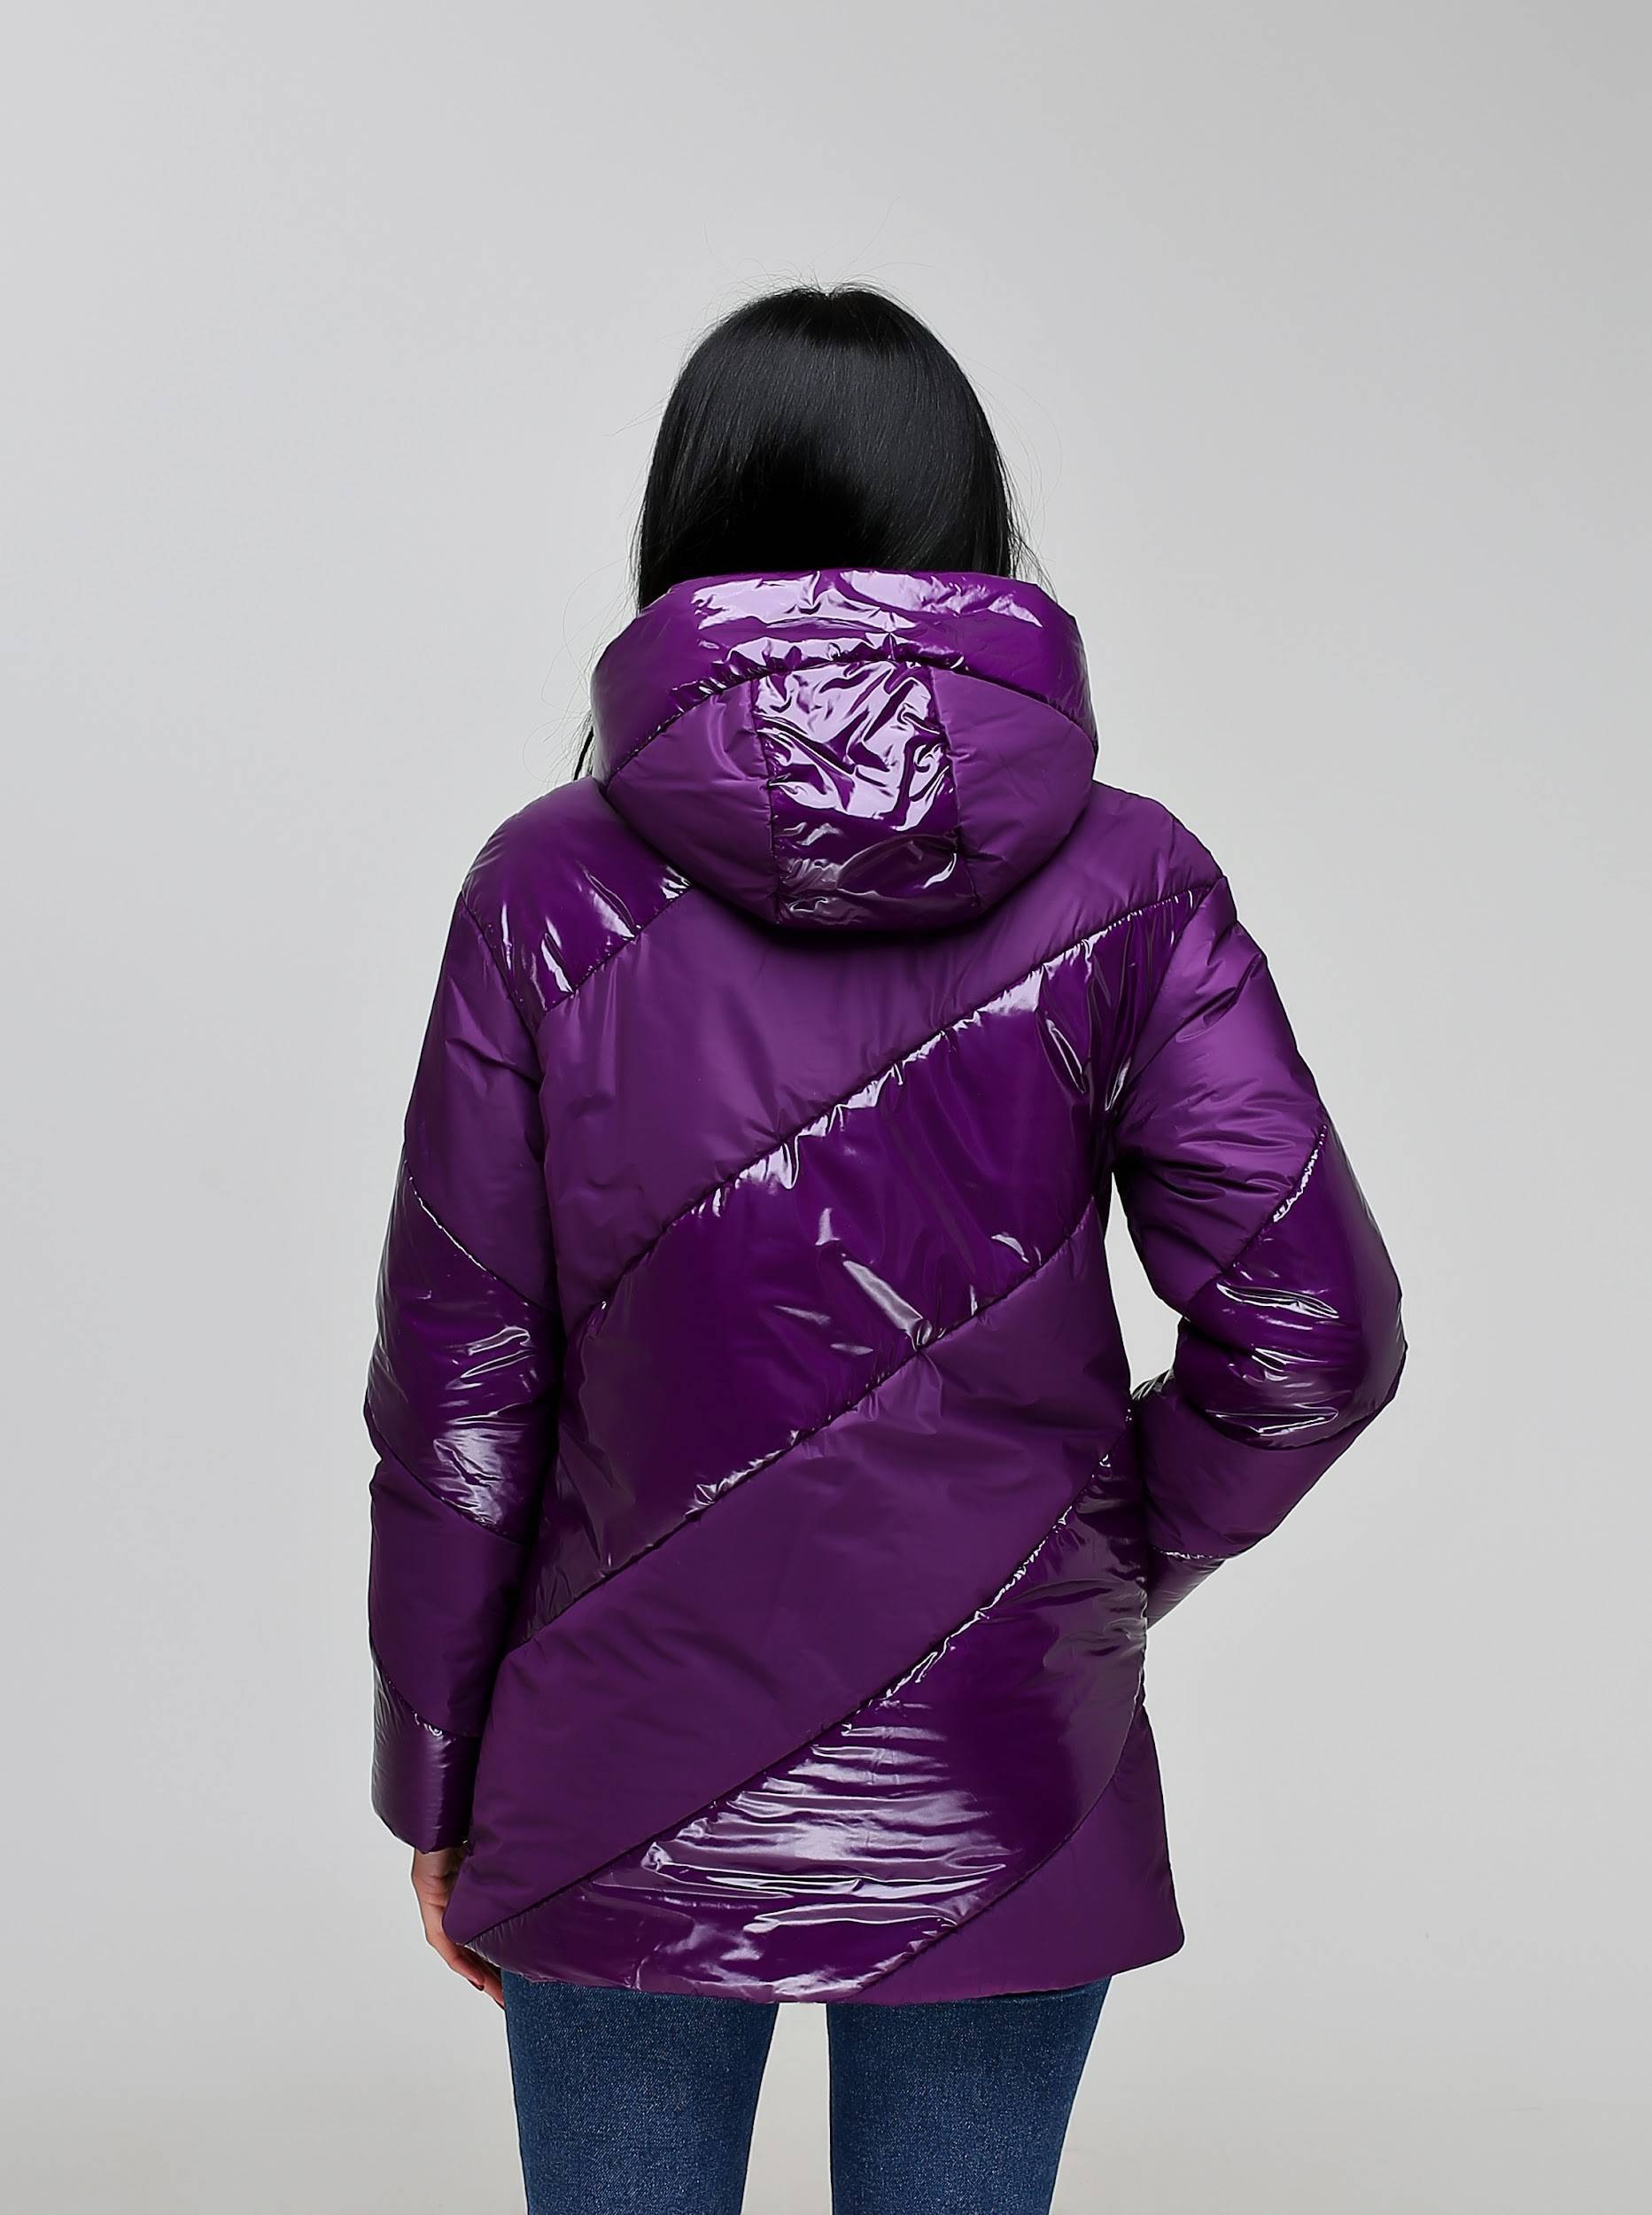 Куртка В-1301 Лак Тон 14 Фиолетовый